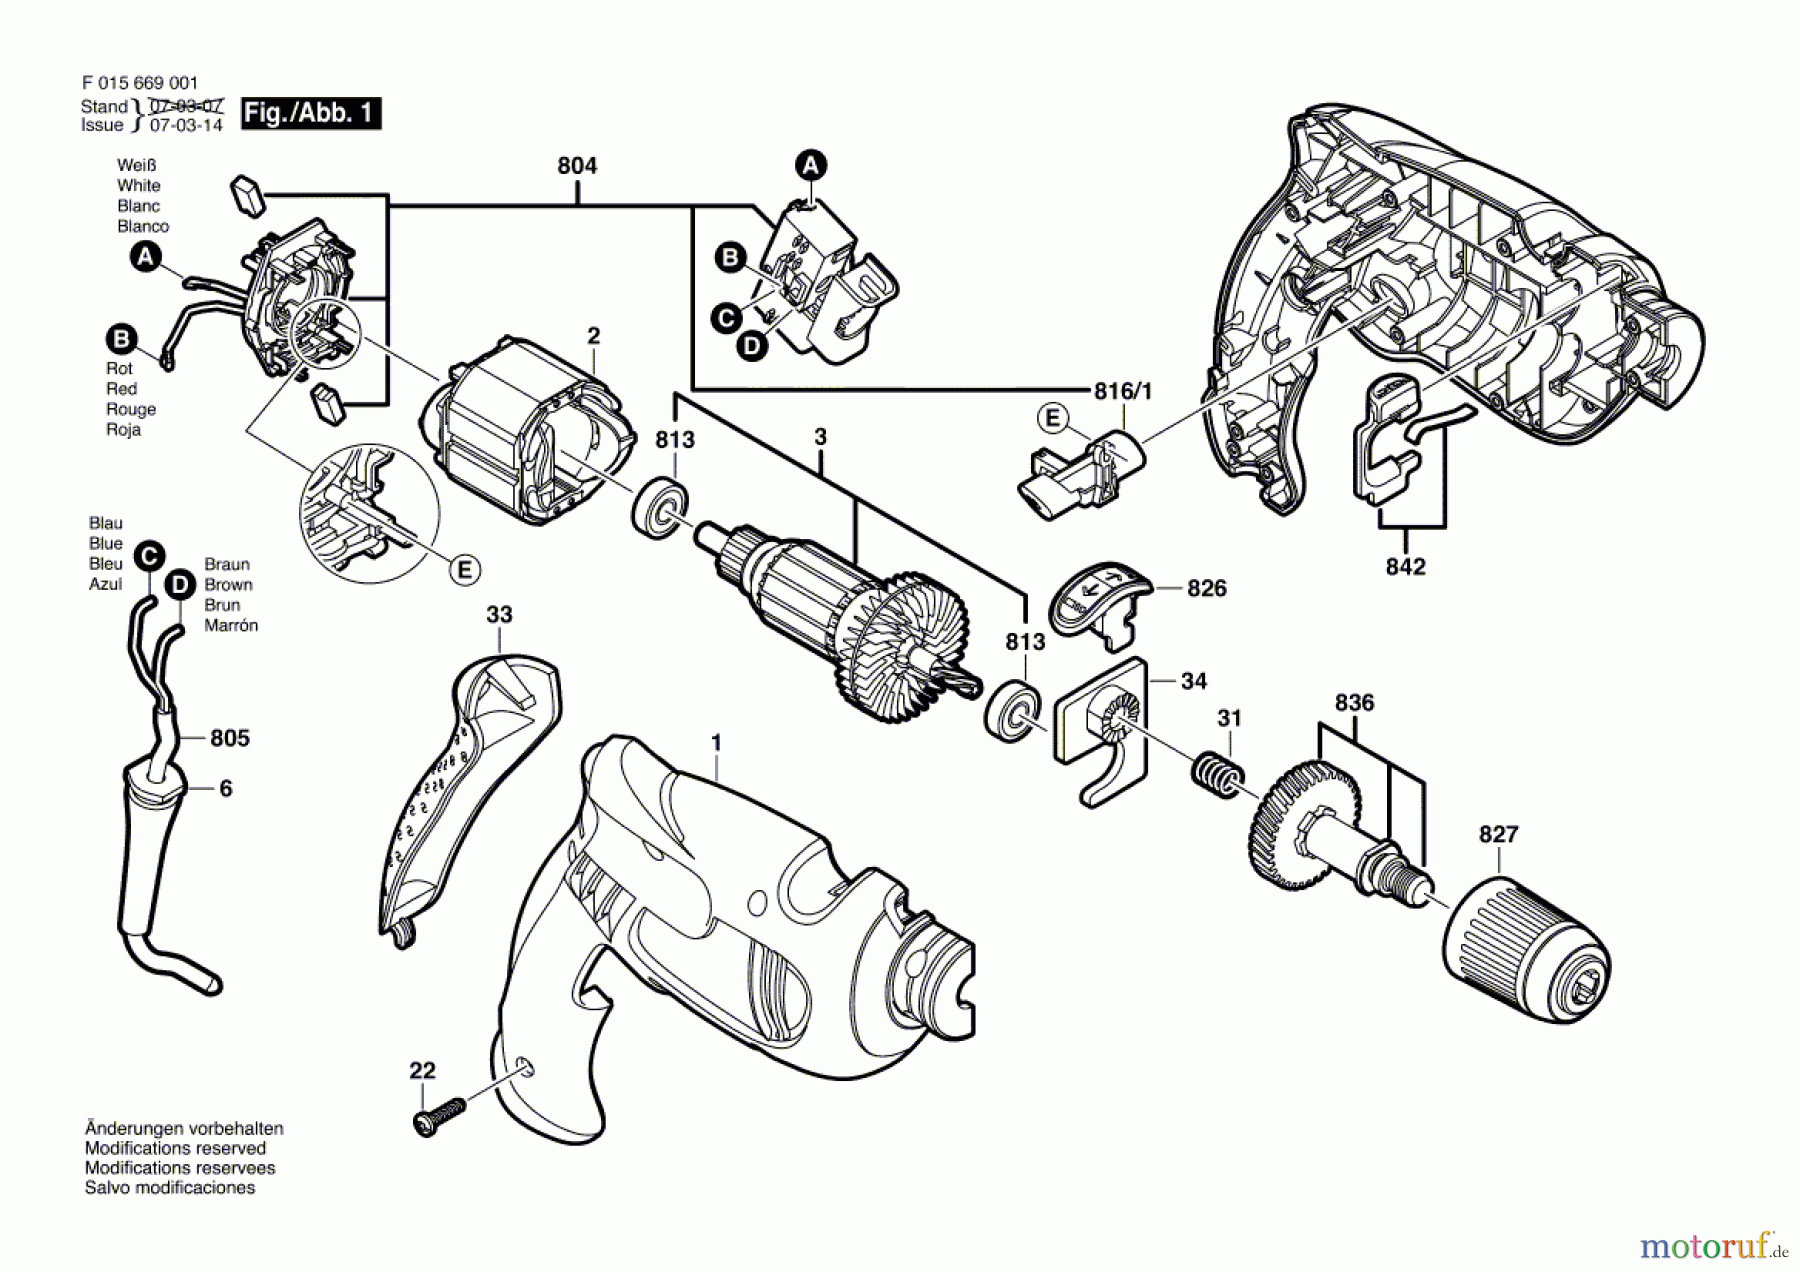  Bosch Werkzeug Schlagbohrmaschine 6690 Seite 1